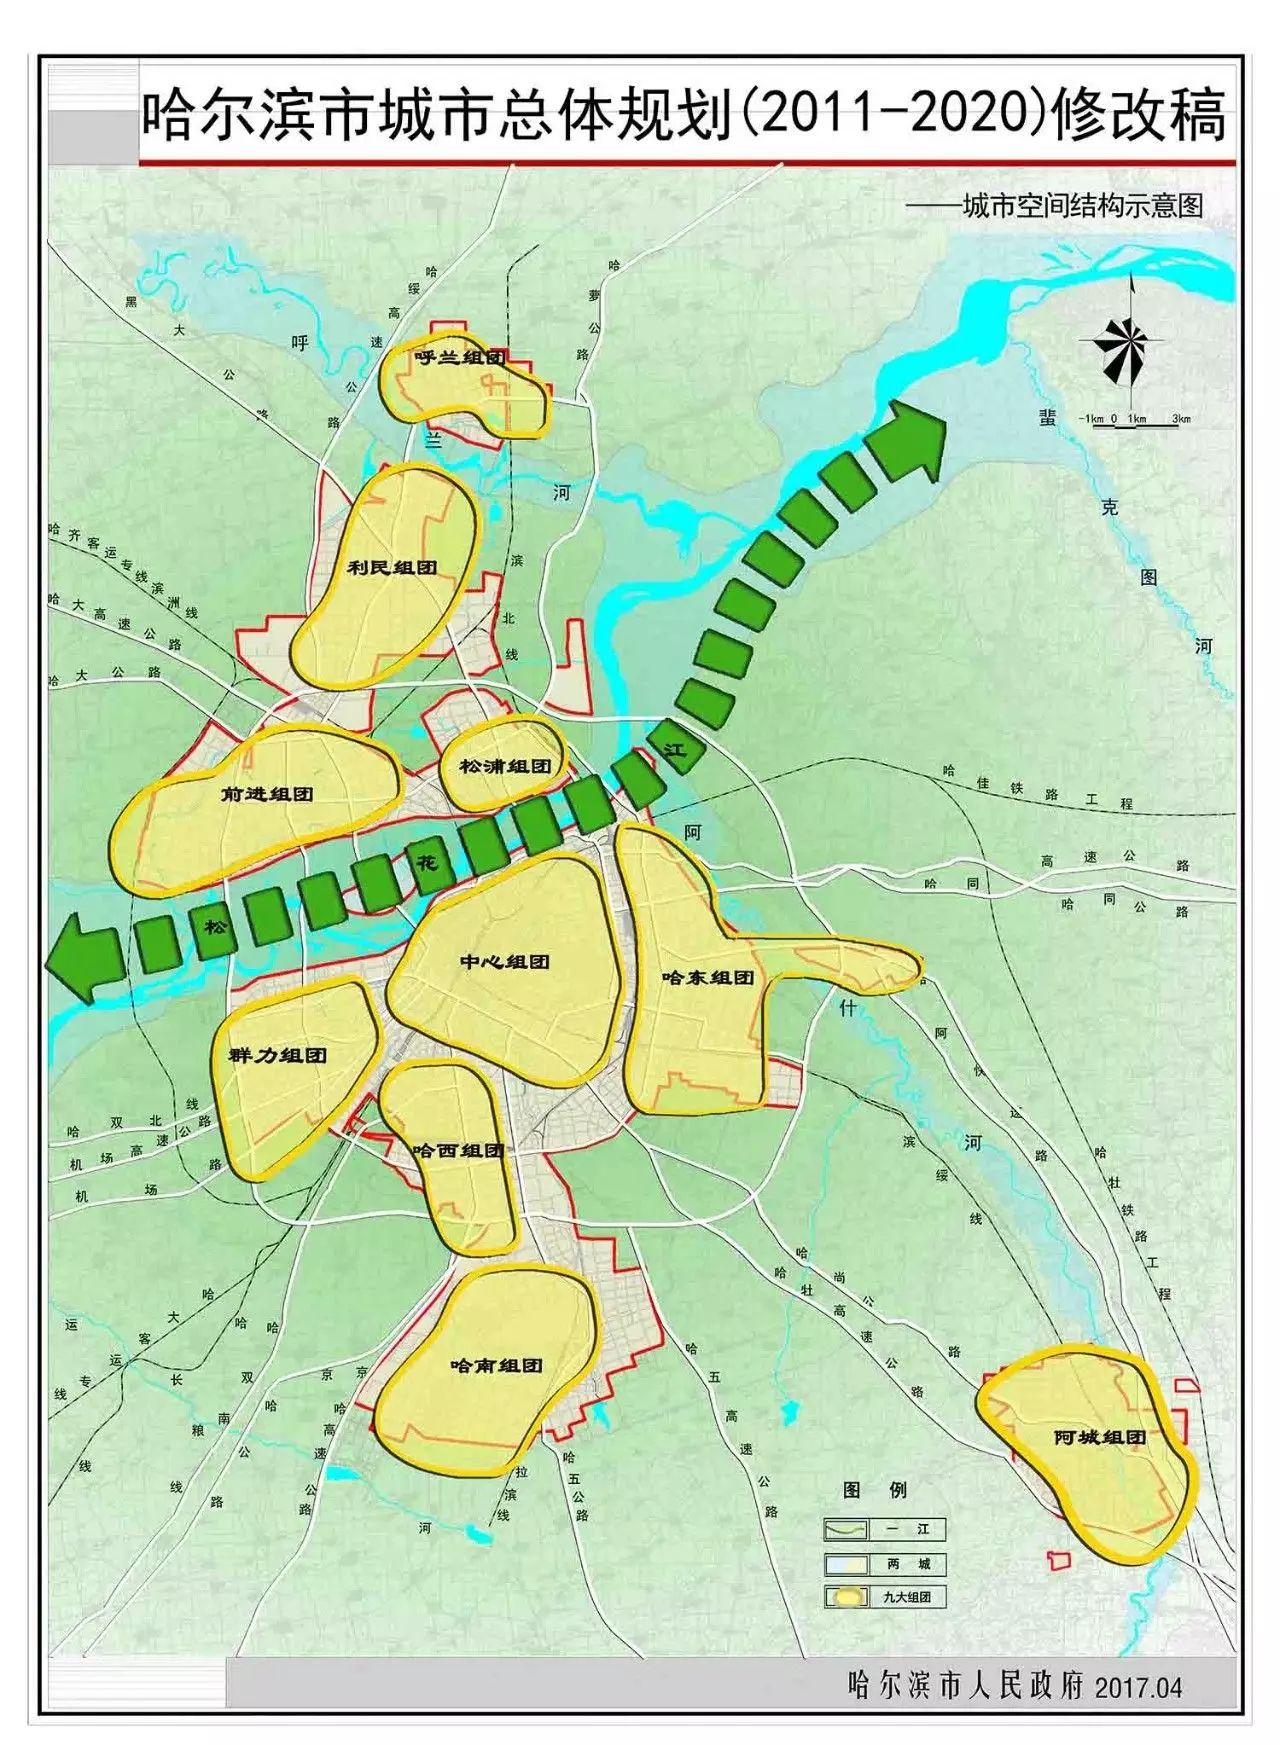 《哈尔滨市城市总体规划(2011-2020)》(2017年修改稿)